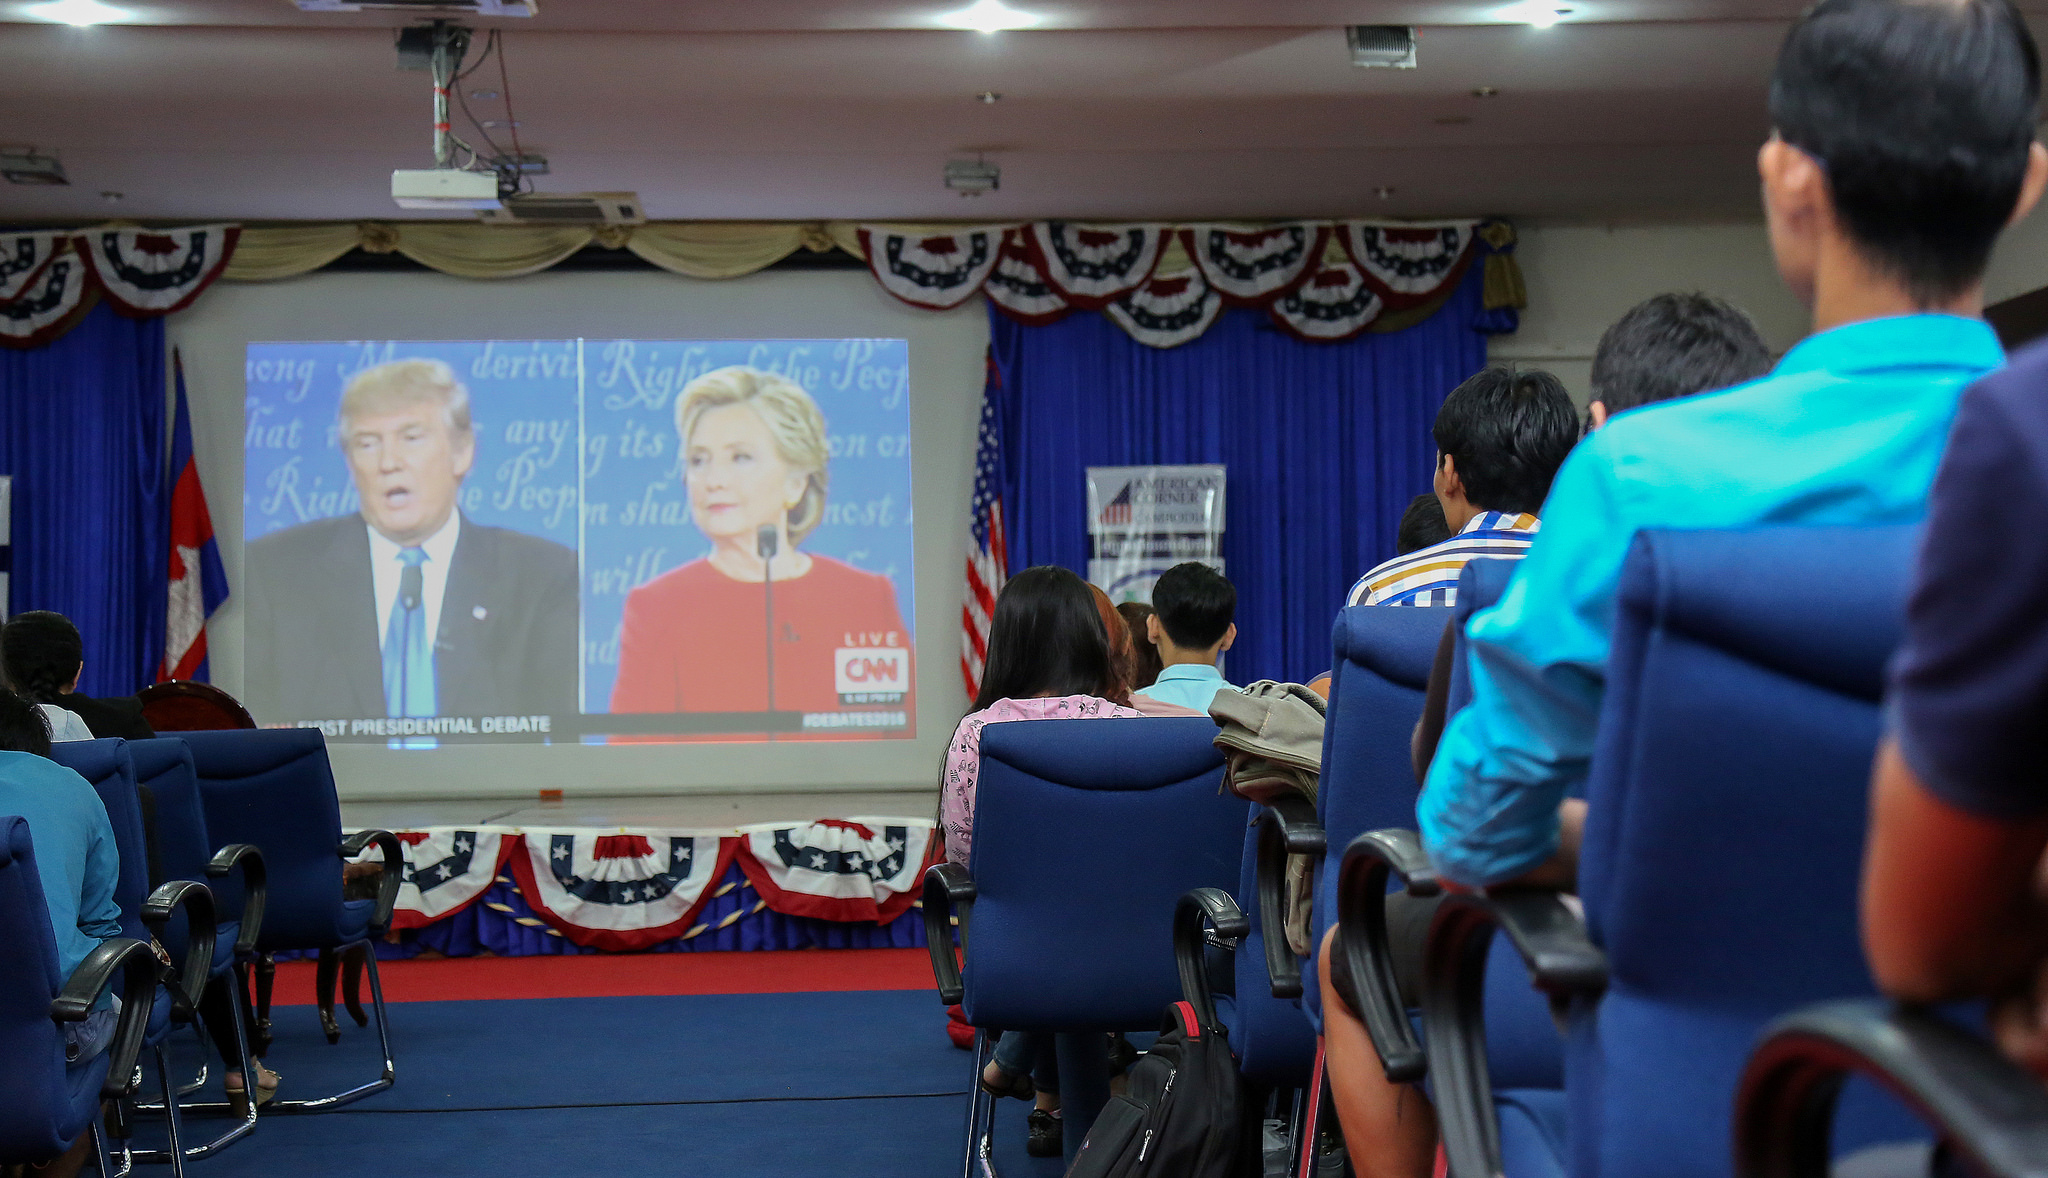 Le débat entre Clinton et Trump | Photo par IIP Photo Archive, Flickr